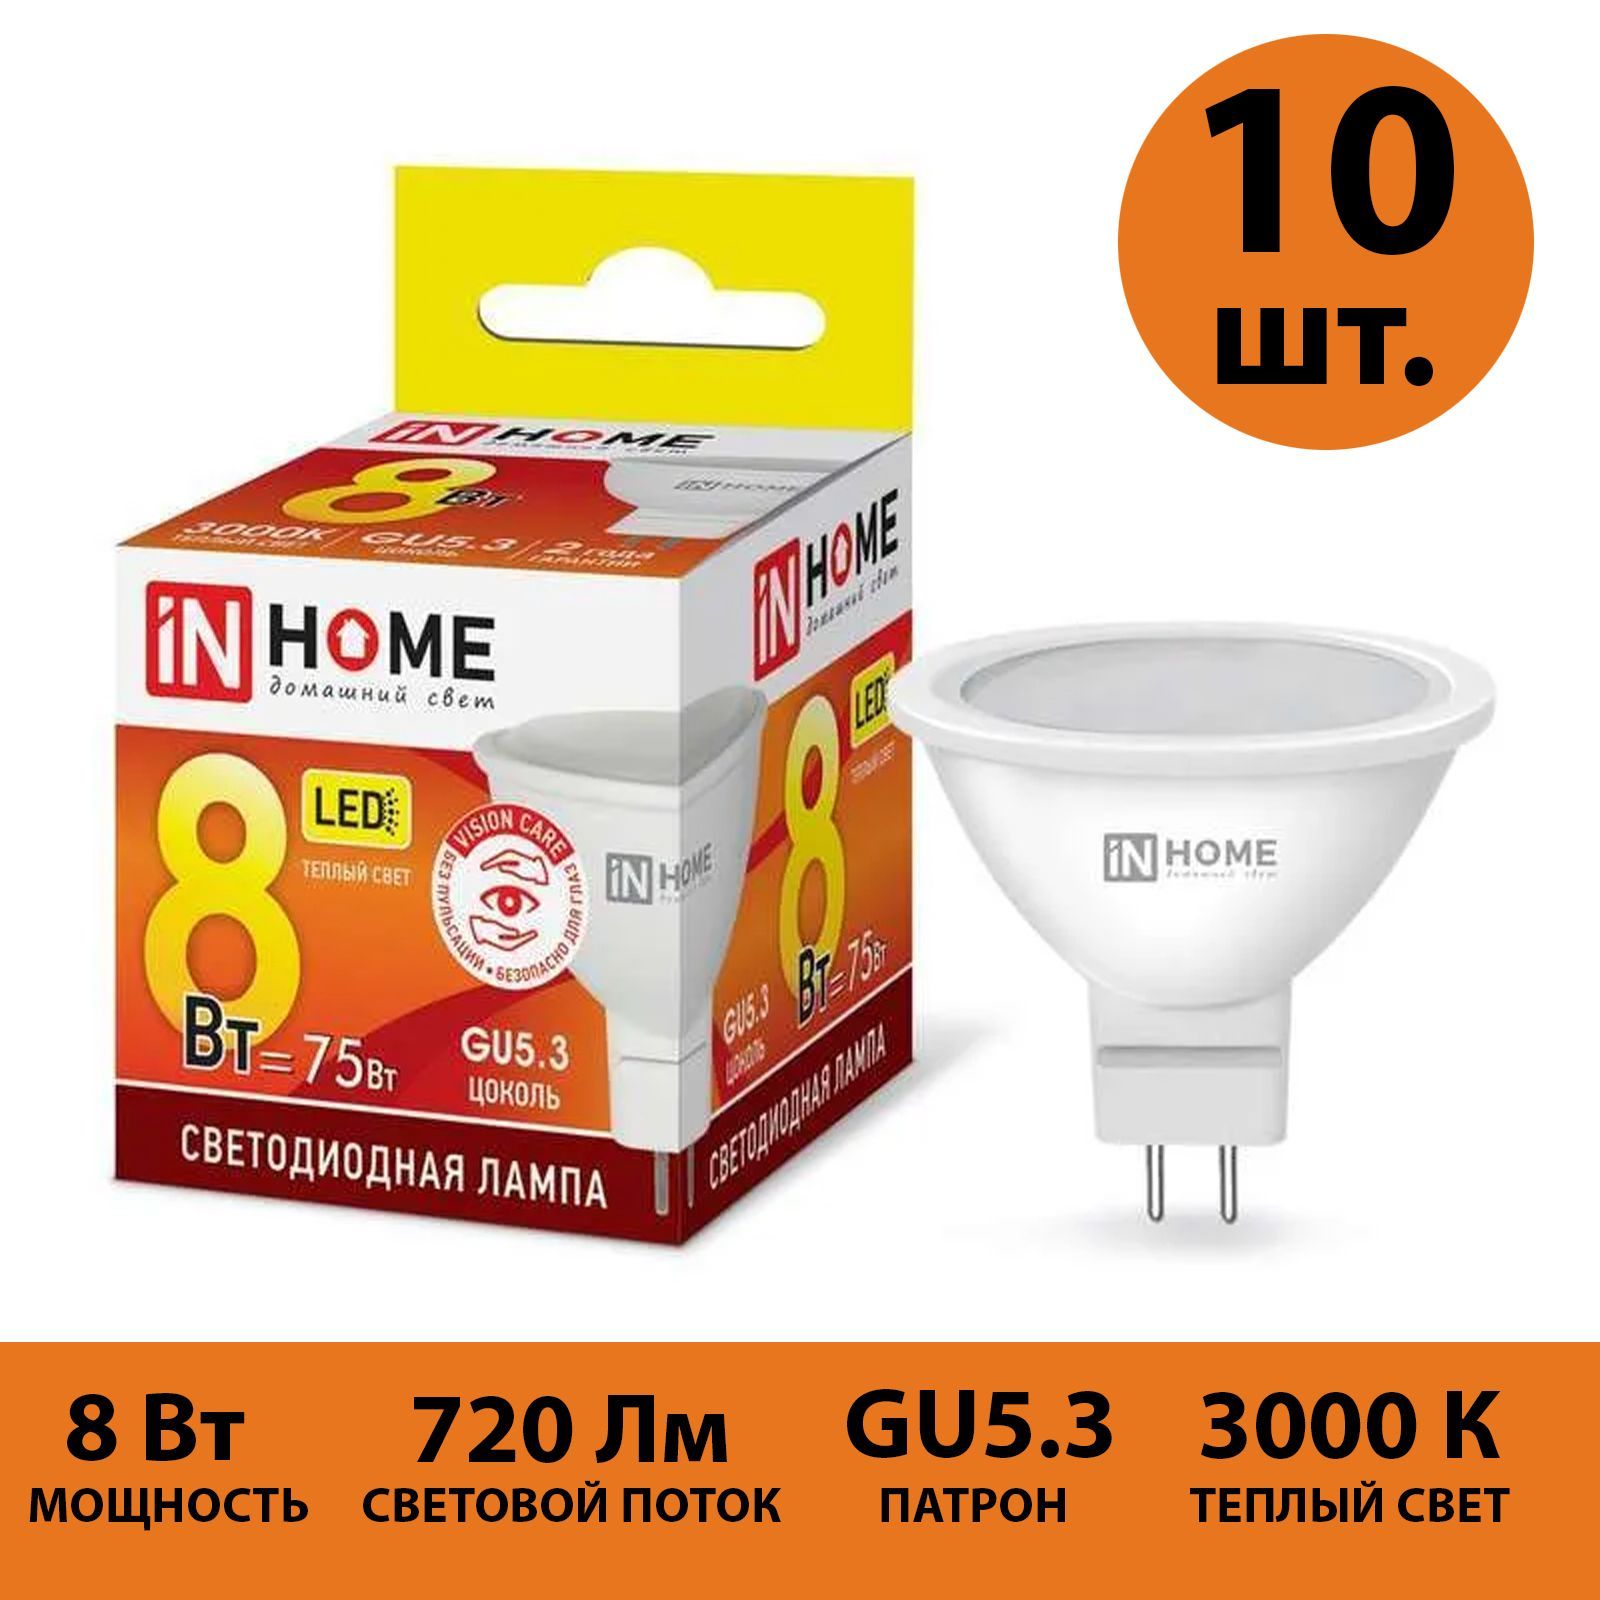 Лампа светодиодная IN HOME GU5.3 10 шт теплый свет 3000К 720 Лм 8 Вт 230 В JCDR VC